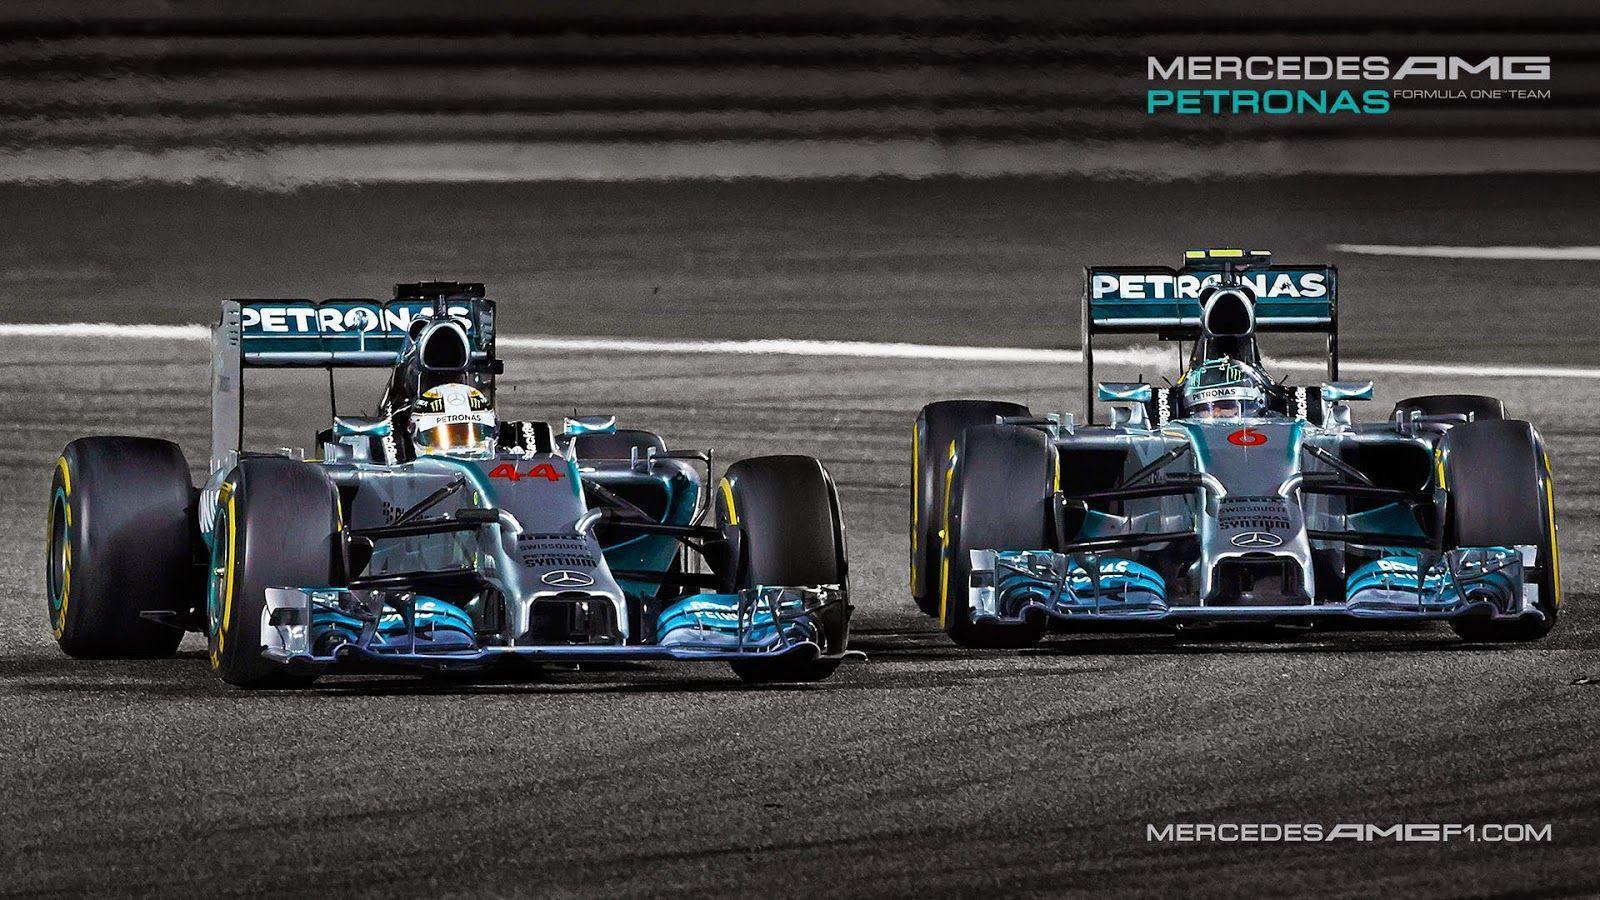 Mercedes F1 Wallpaper Hd - santaretpa